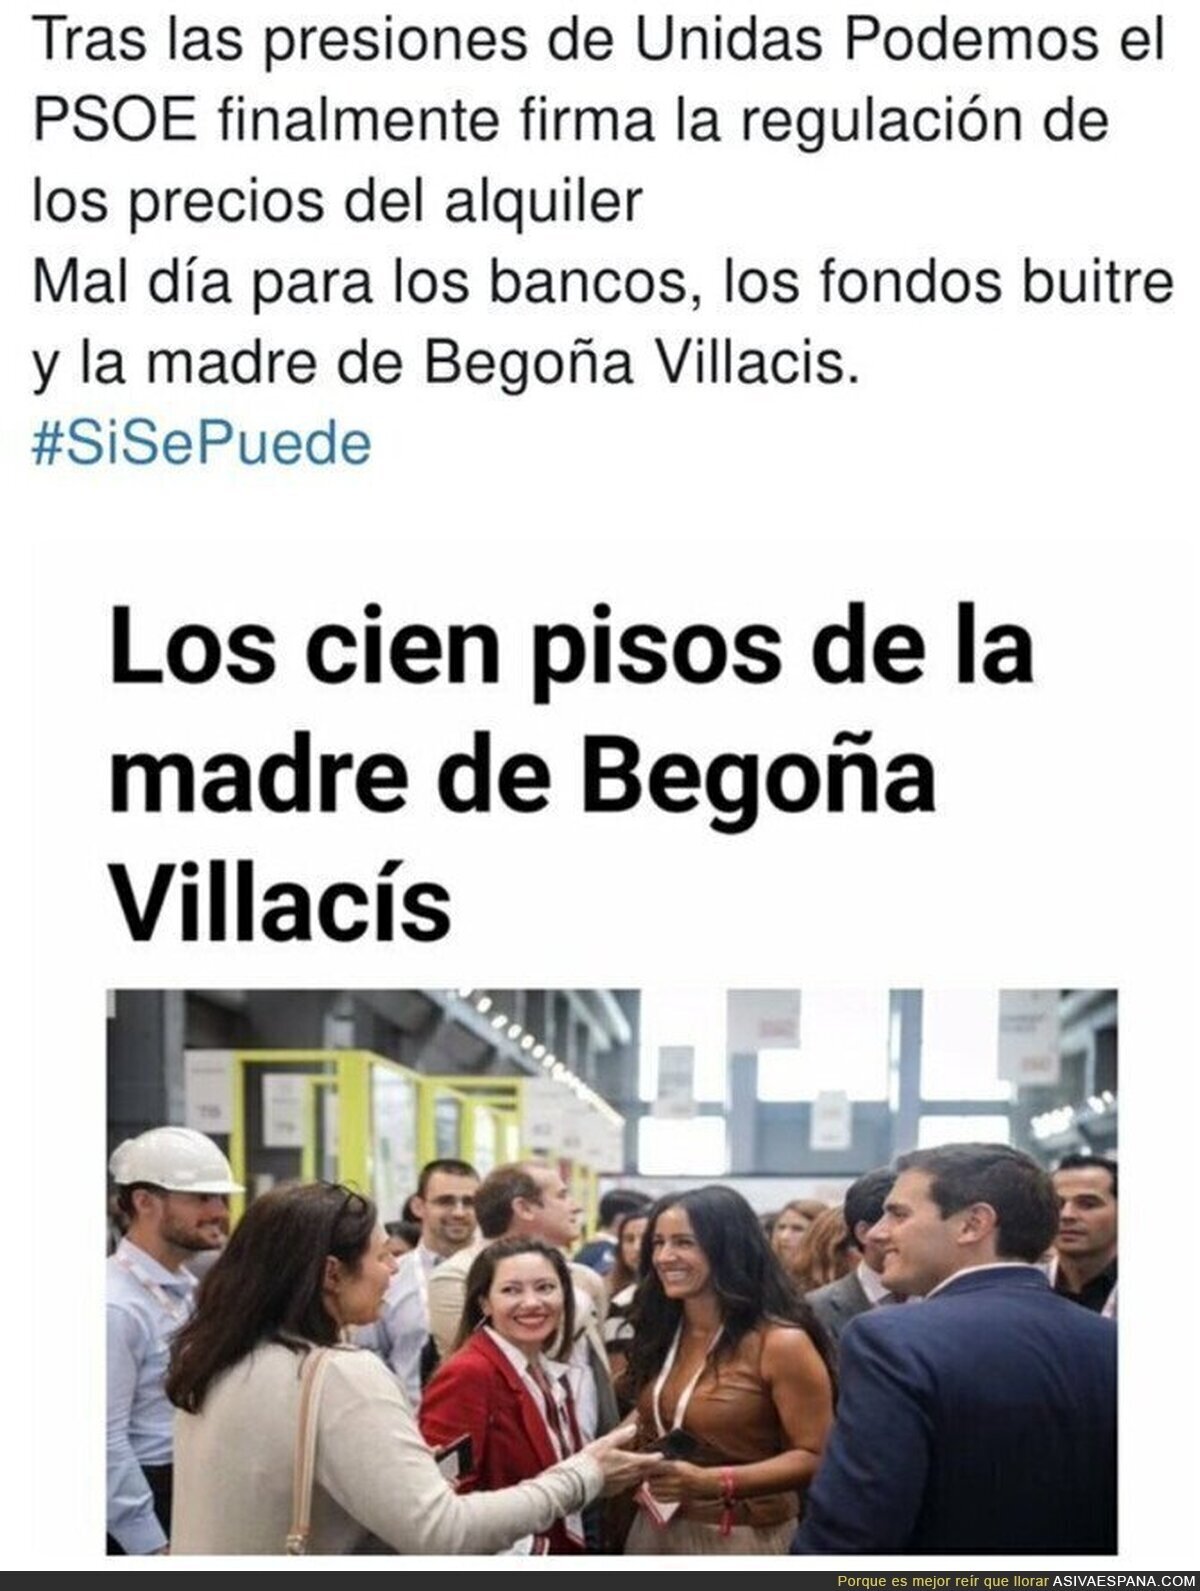 Con razón a Begoña Villacís no le gusta Podemos